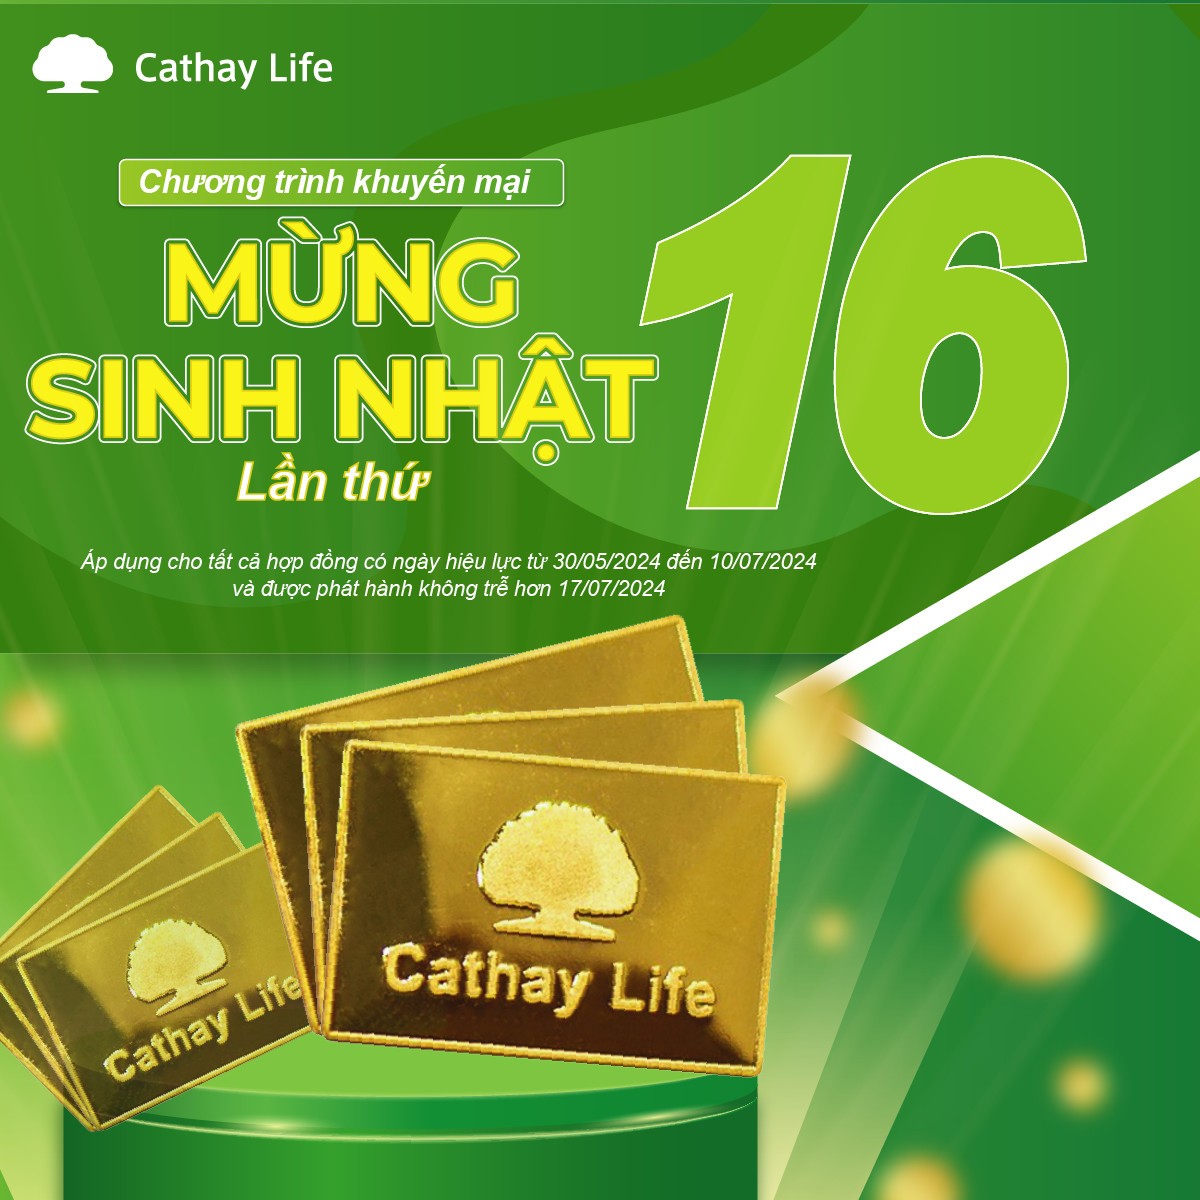 Cathay Life Việt Nam triển khai chương trình khuyến mãi kỷ niệm 16 năm thành lập Cathay - 1